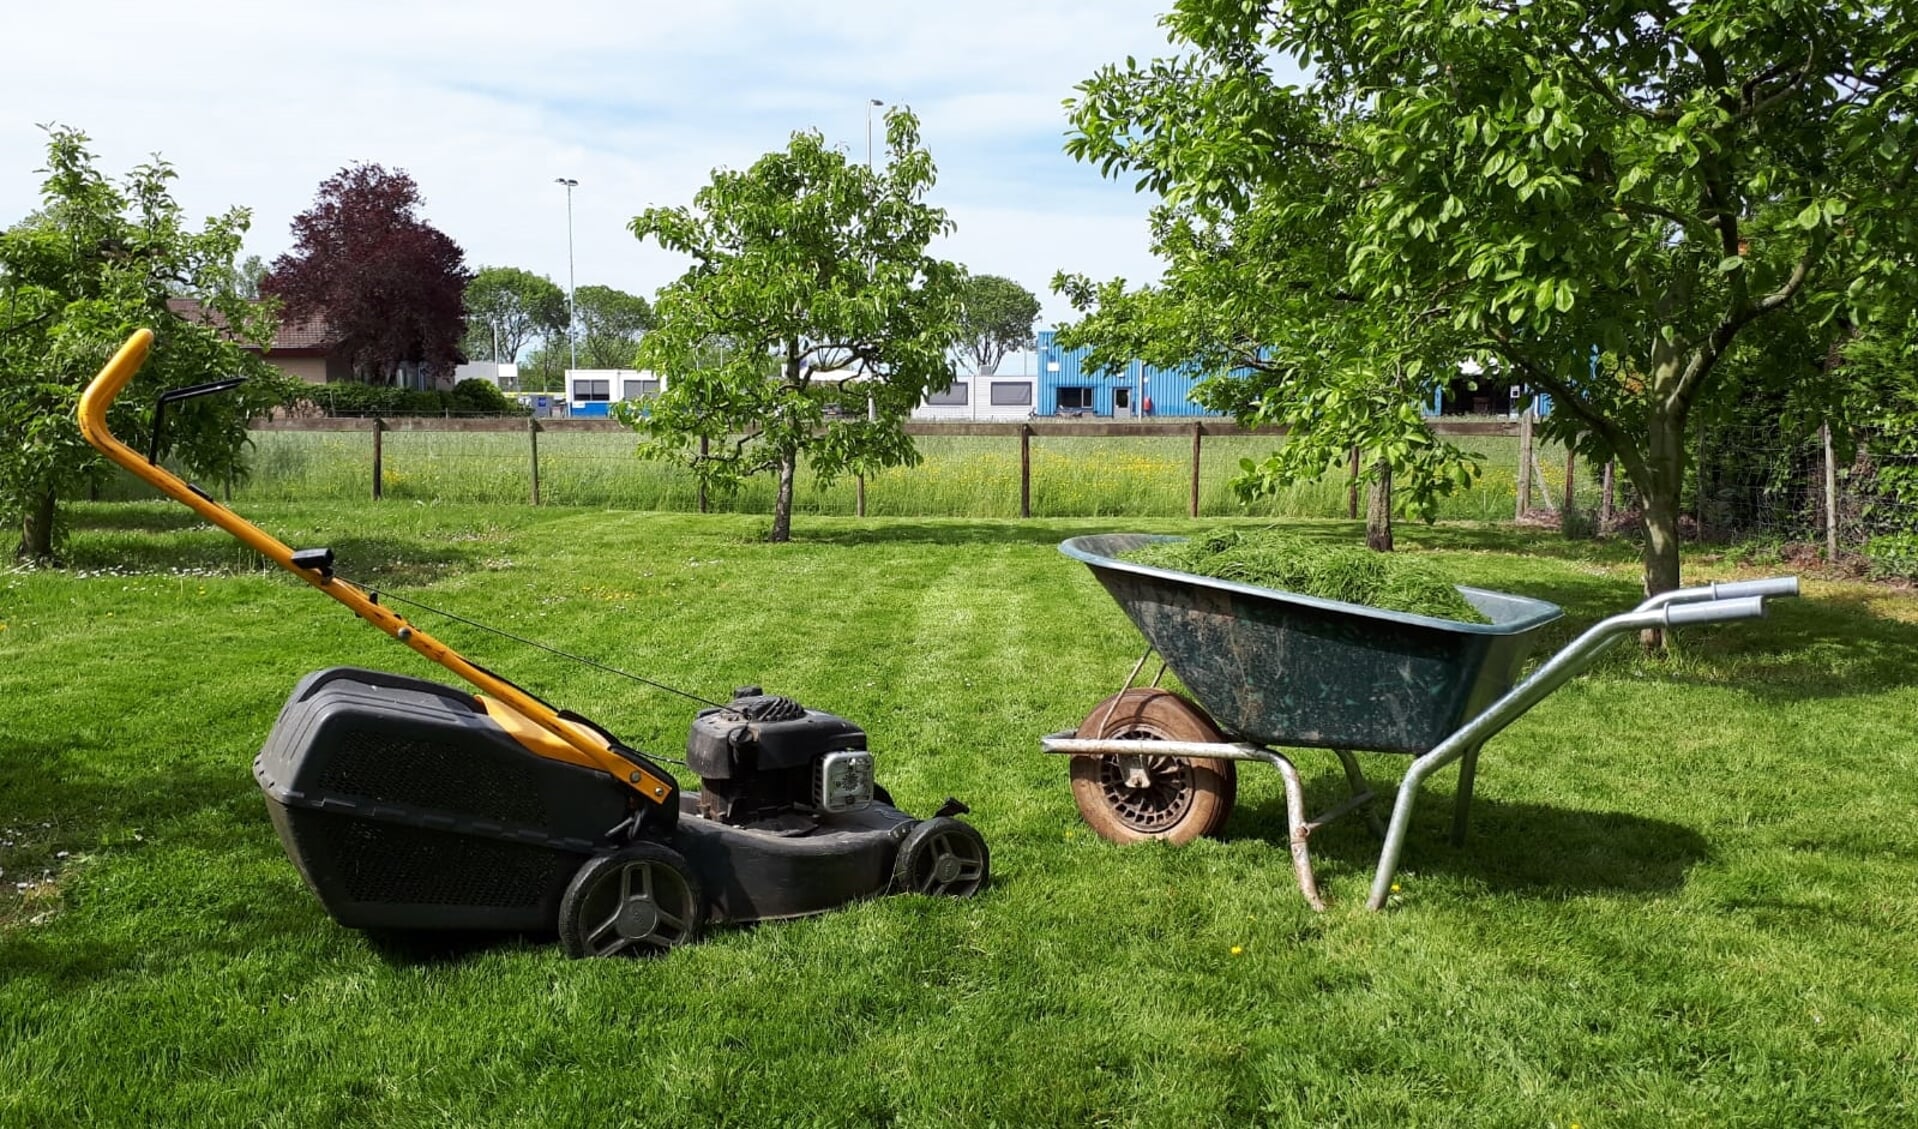 Cliënten van Hoog-Broek doen vanaf dit voorjaar eenvoudige klussen in de tuin of boomgaard. (foto: Zorgboerderij Hoog-Broek)